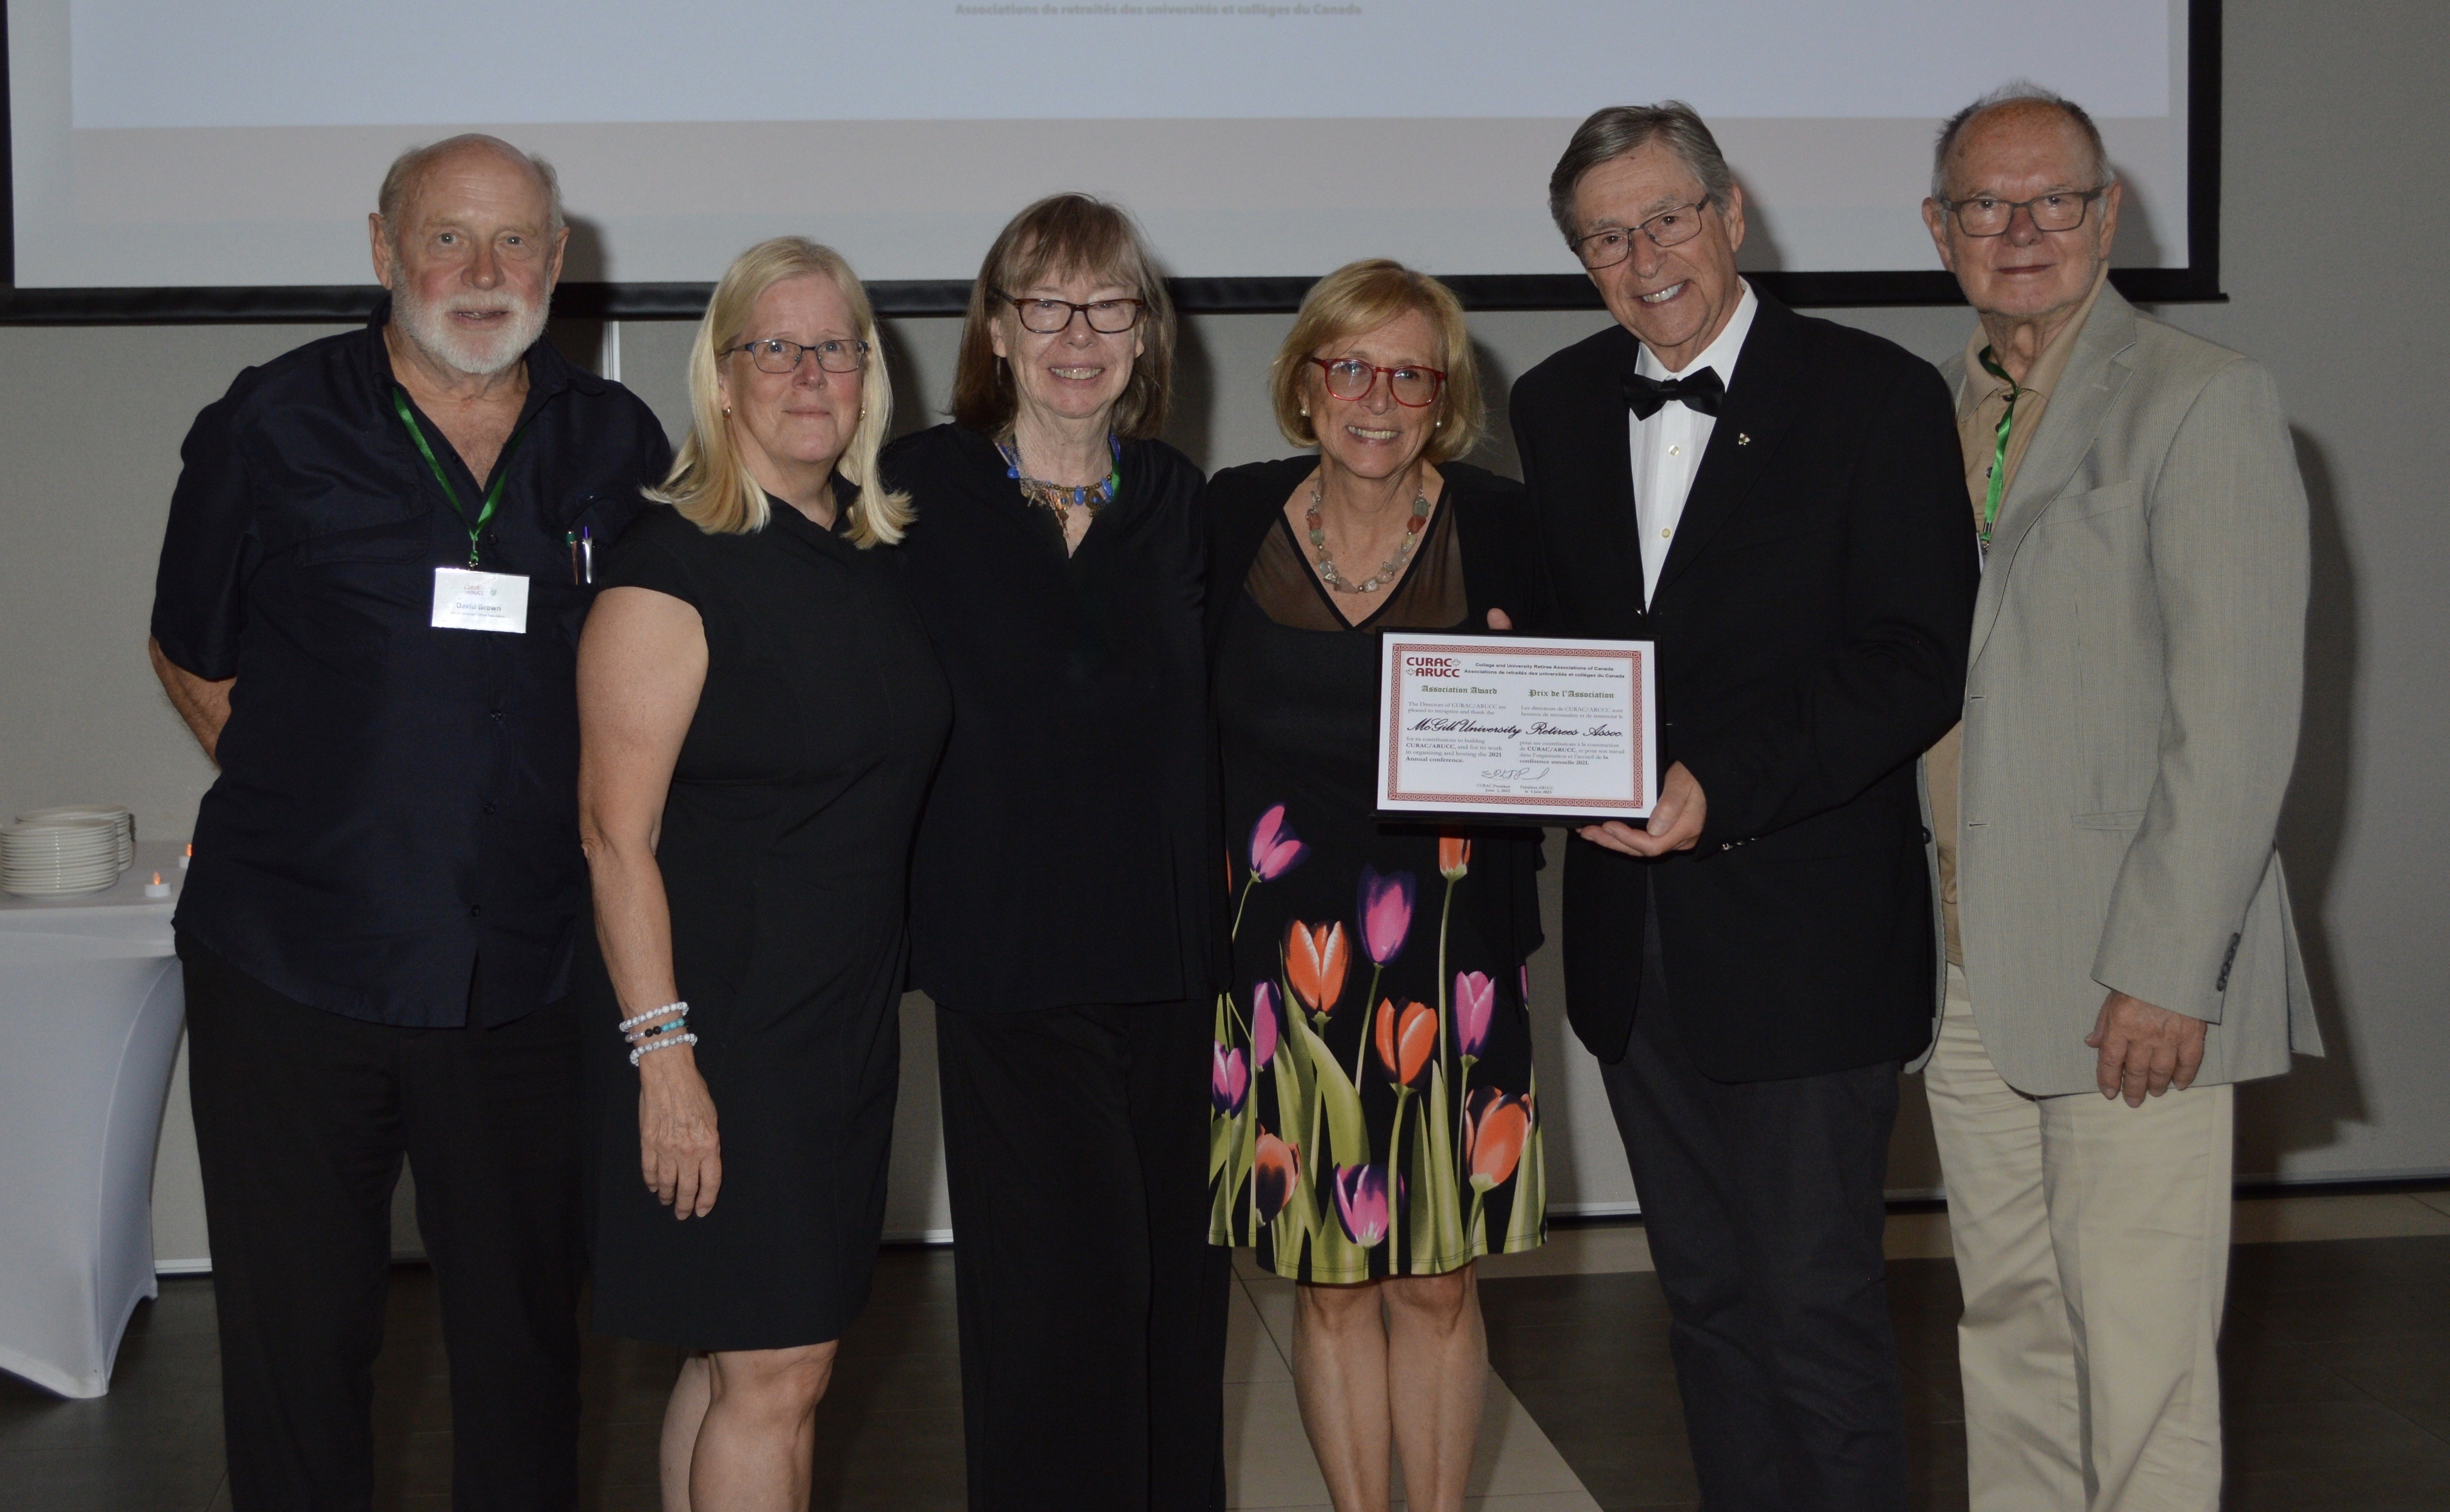 MURA members receiving the Association Award